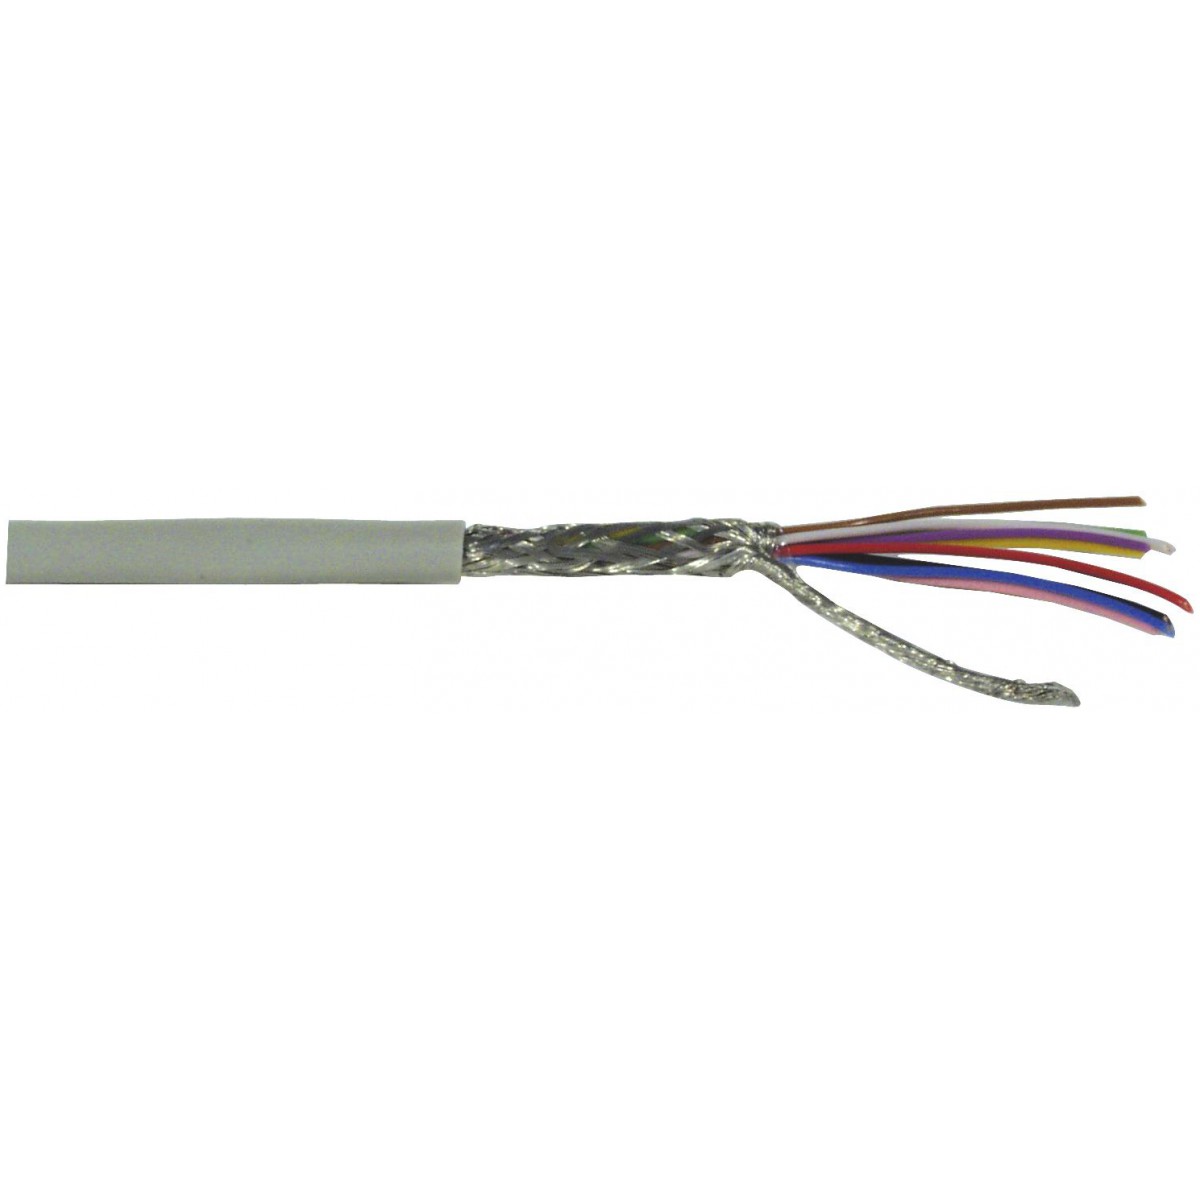 Kabel datový stíněný LiYCY 10x0.14 qmm, role 100m